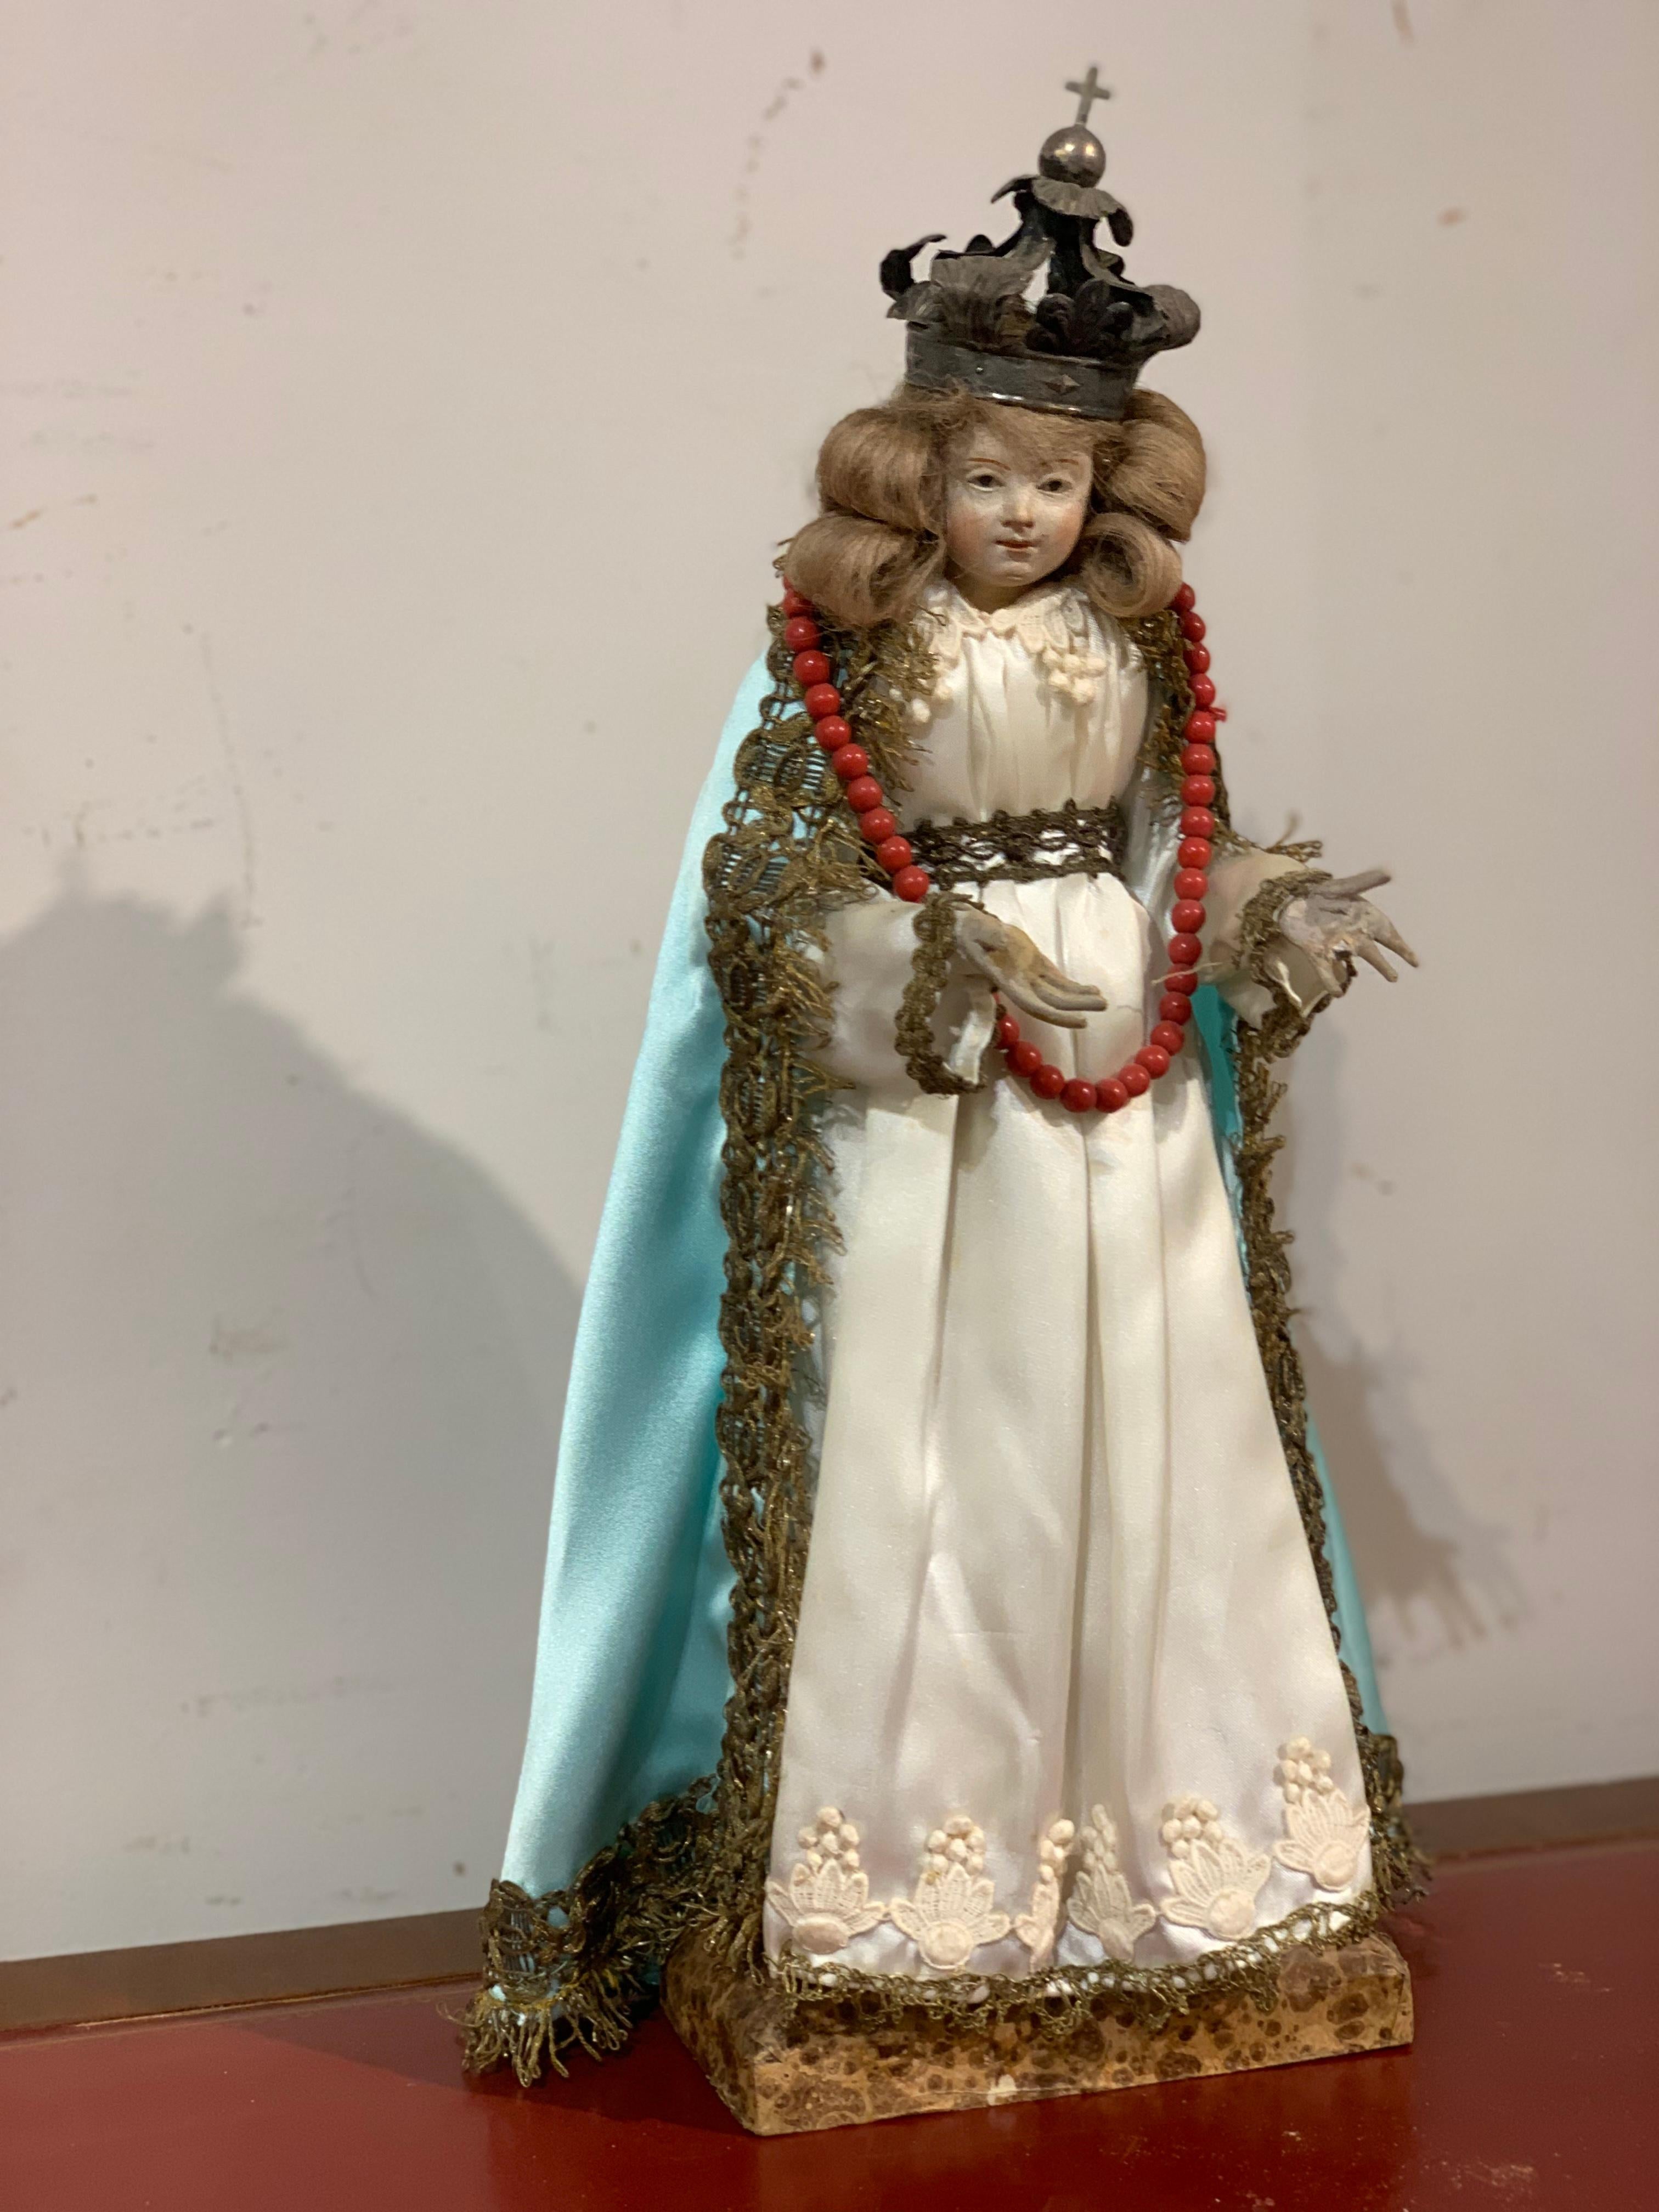 Belle figure votive représentant la Madone avec des vêtements de soie et une couronne d'argent, sur une base en bois peinte à l'imitation du marbre.
Petit format, fabrication en Italie du Sud dans la seconde moitié des années 1700.

MESURES : h cm